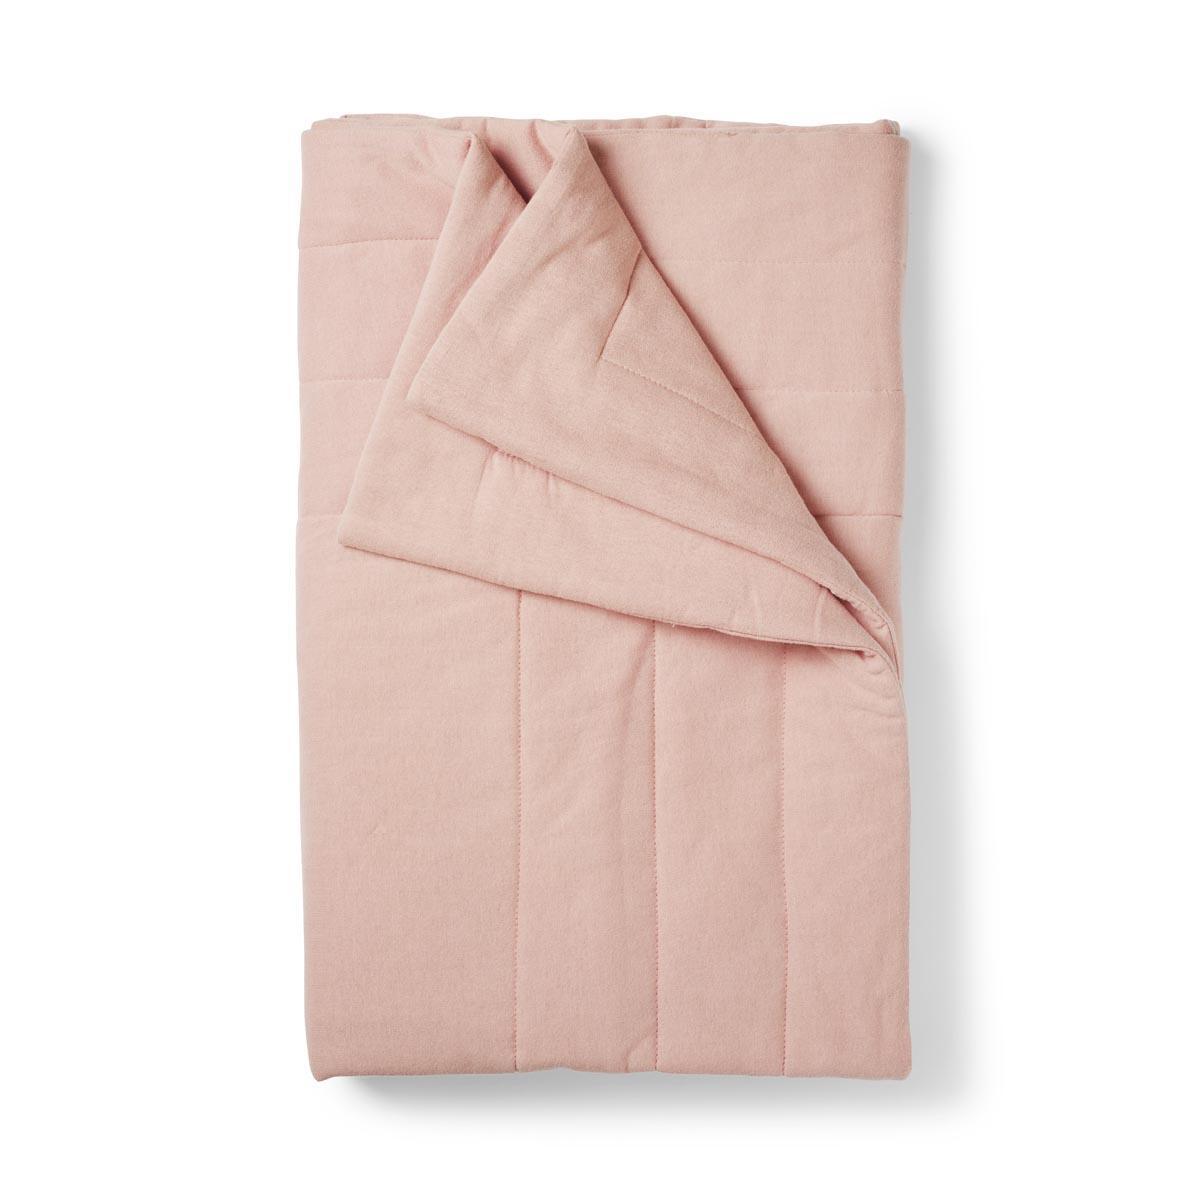 Elodie Details одеяло Blushing Pink - Elodie Details